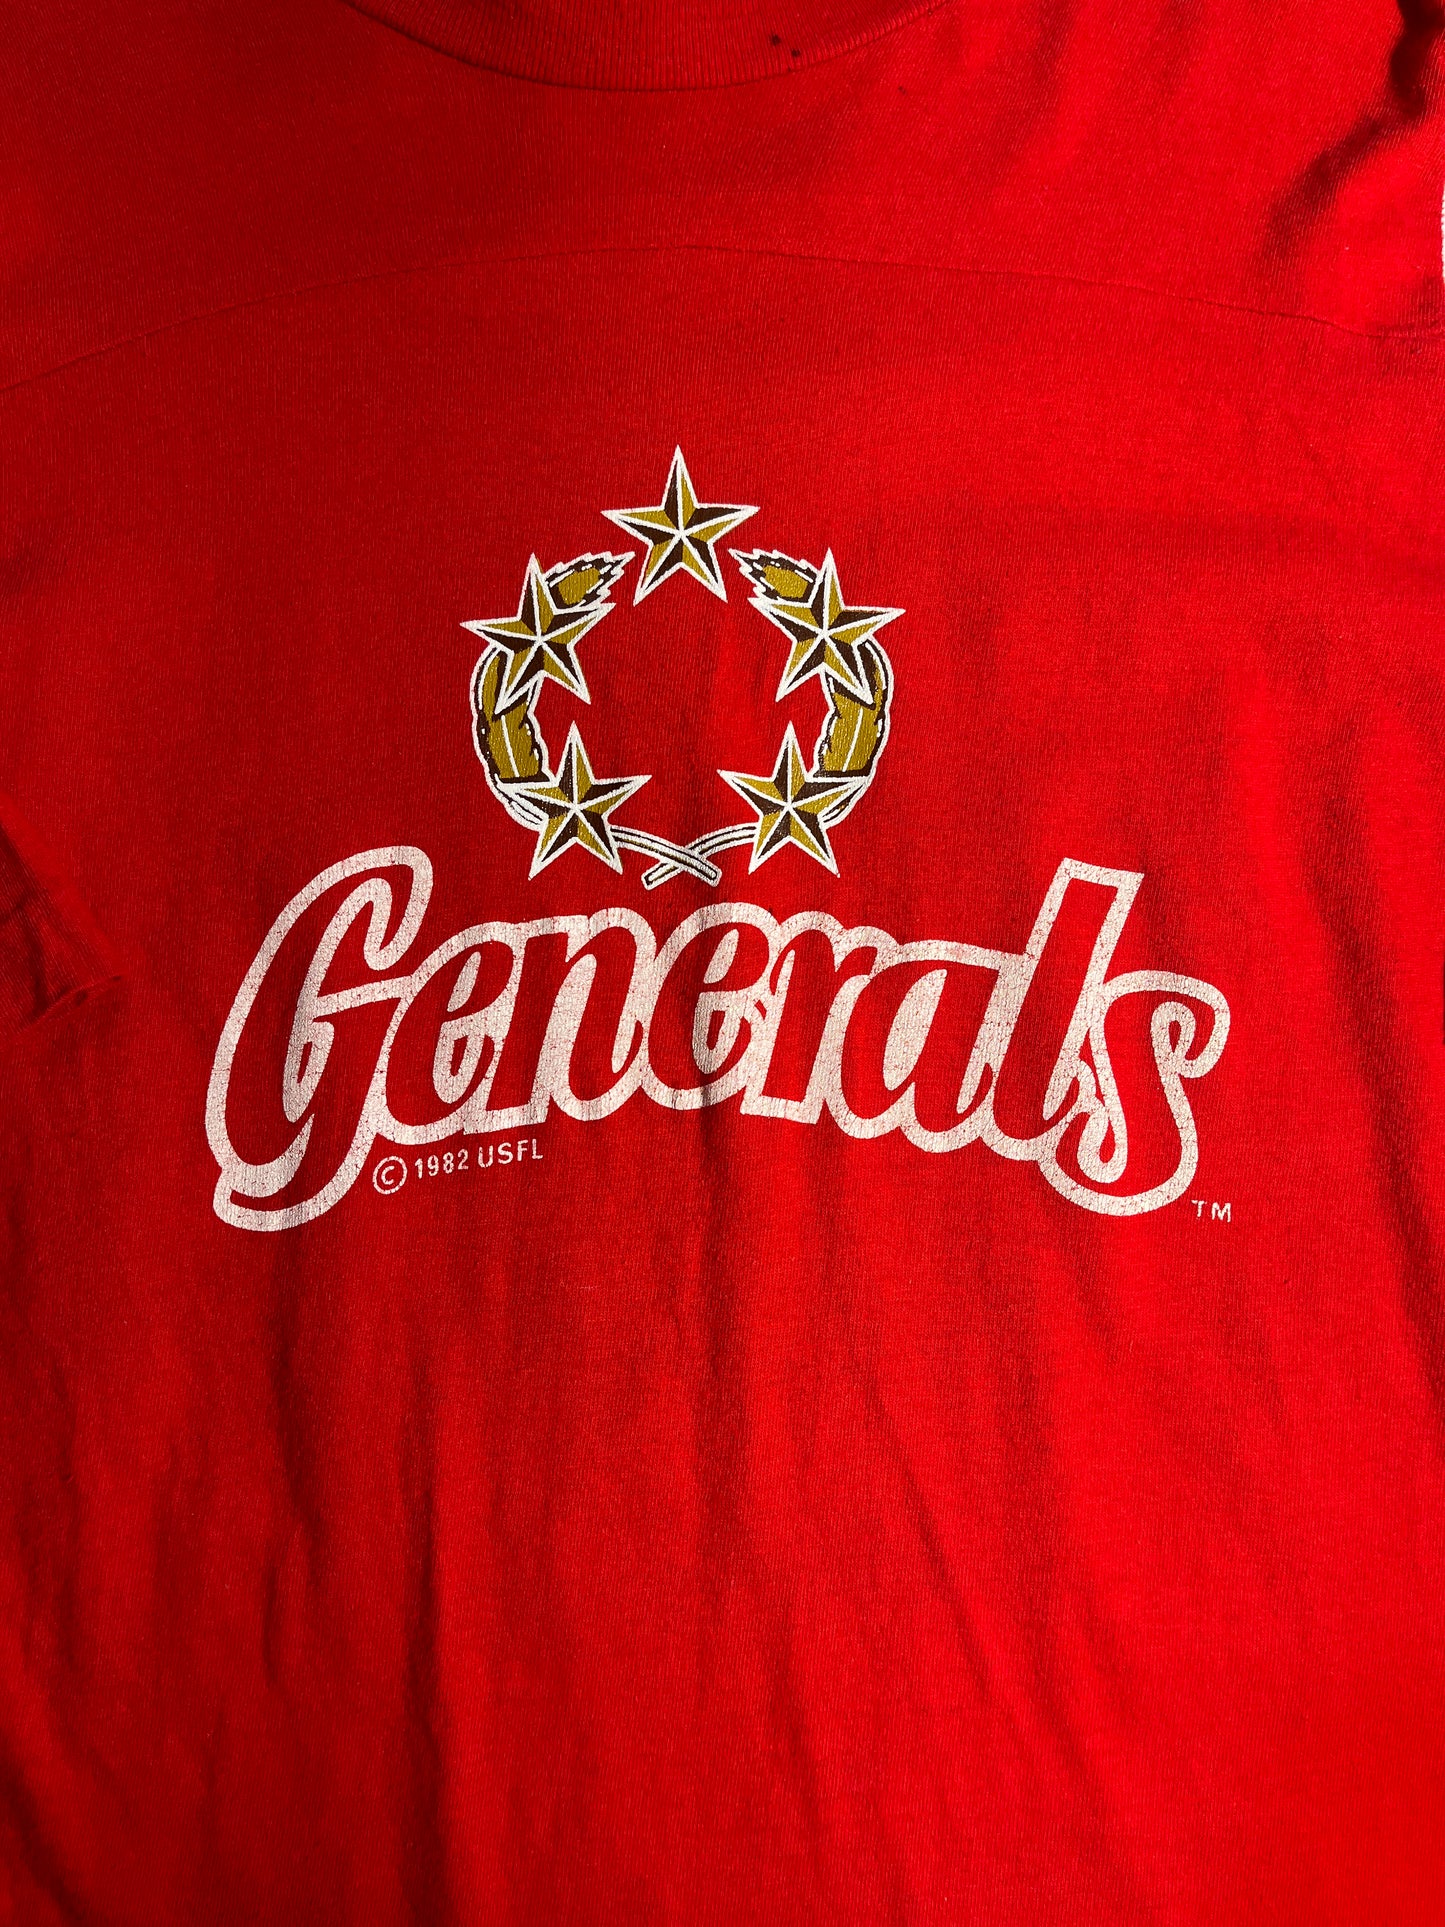 Vintage Generals T-Shirt OG Champion USFL 80's